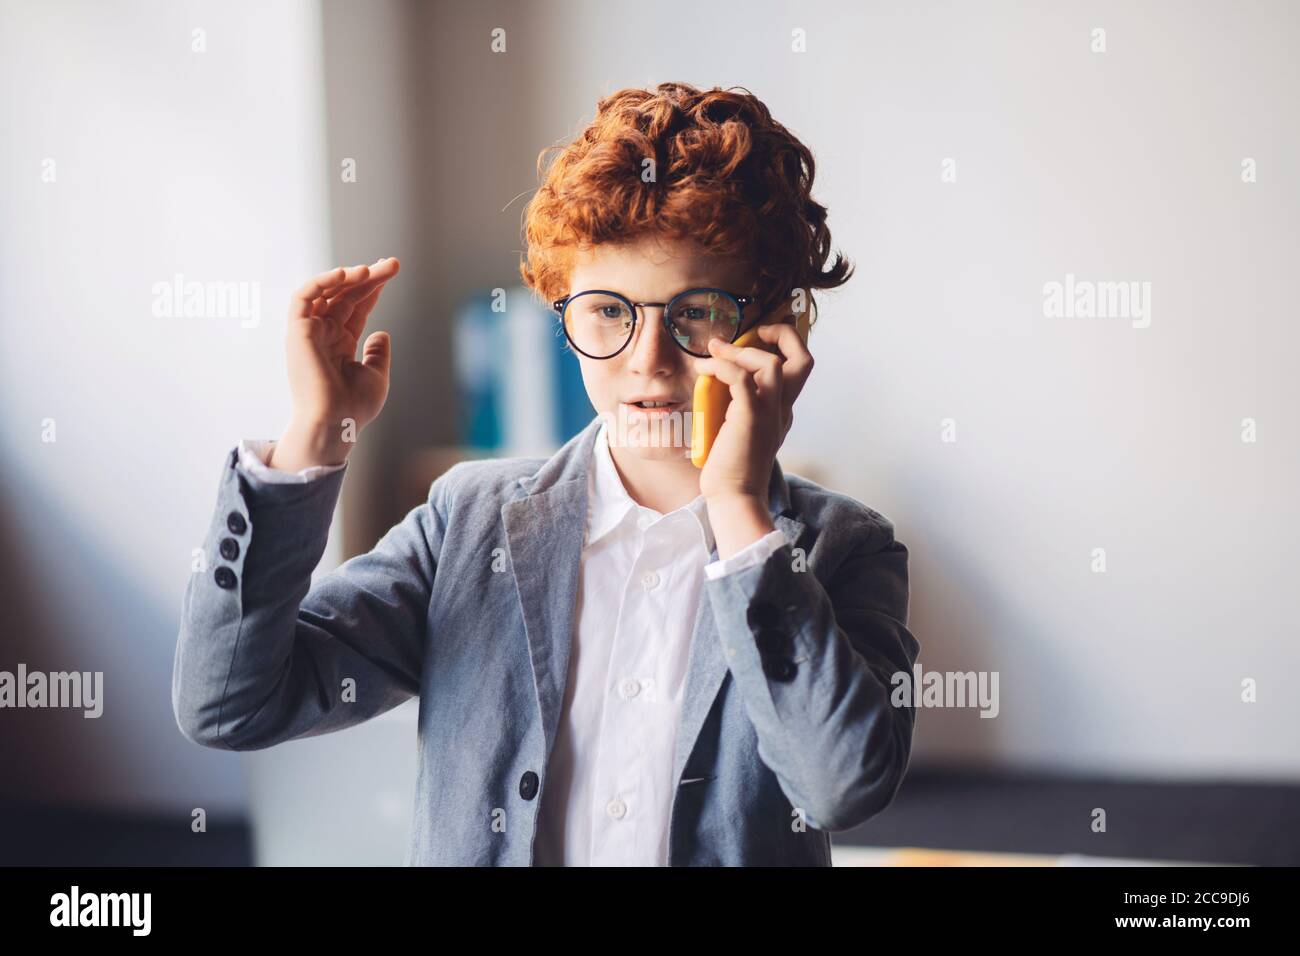 Niño de pelo rojo en un traje que tiene una llamada telefónica Foto de stock